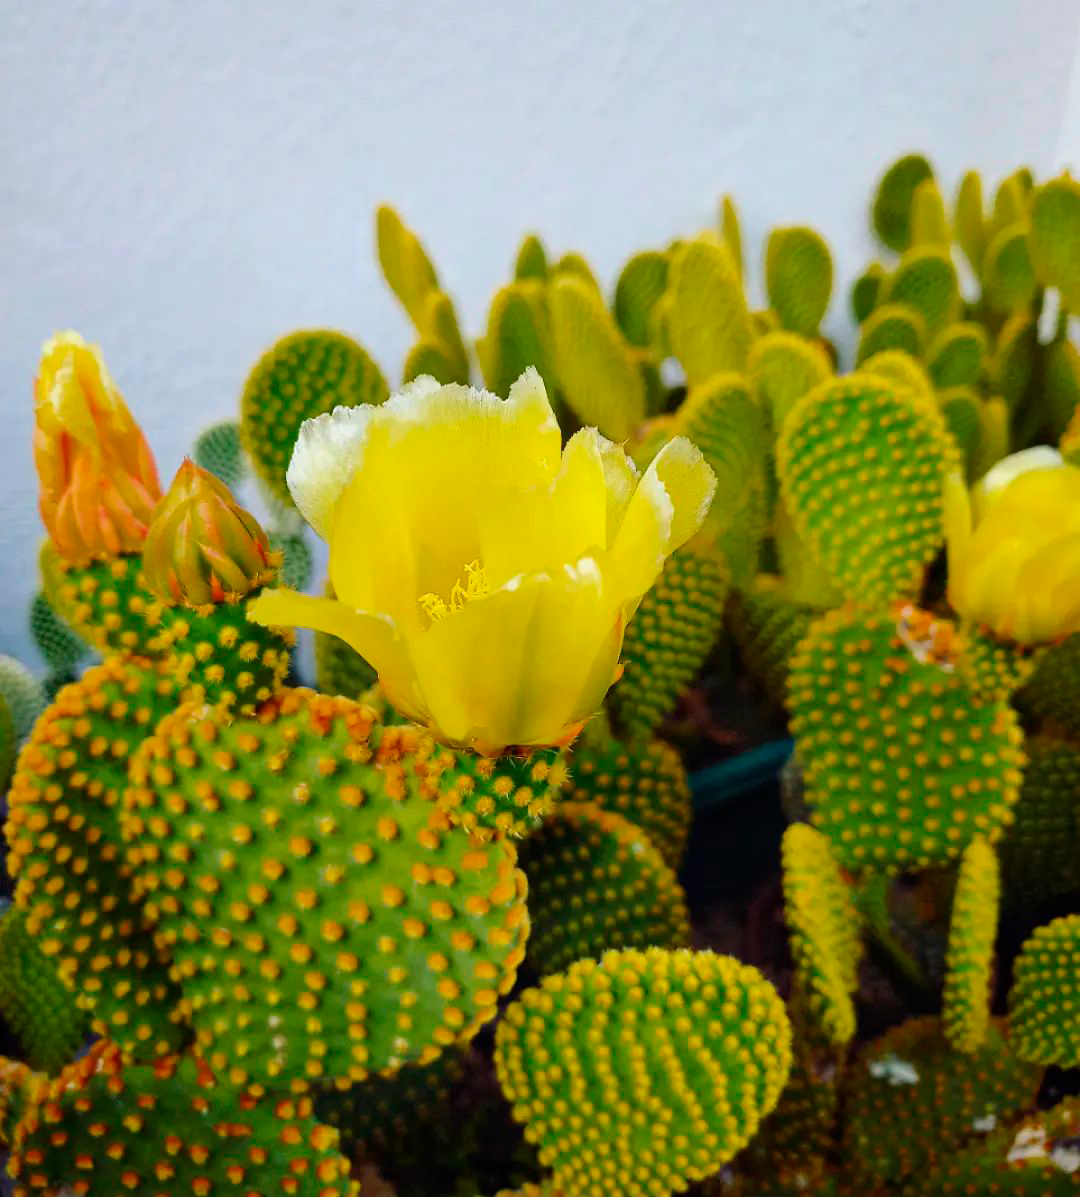 10 кактусов с потрясающими жёлтыми цветами цветы, жёлтые, кактус, часто, можно, которые, обычно, кактуса, вырастают, верхушке, появляются, только, кактусов, нежные, цветёт, жёлтыми, увидеть, чтобы, примерно, Копьяпоа